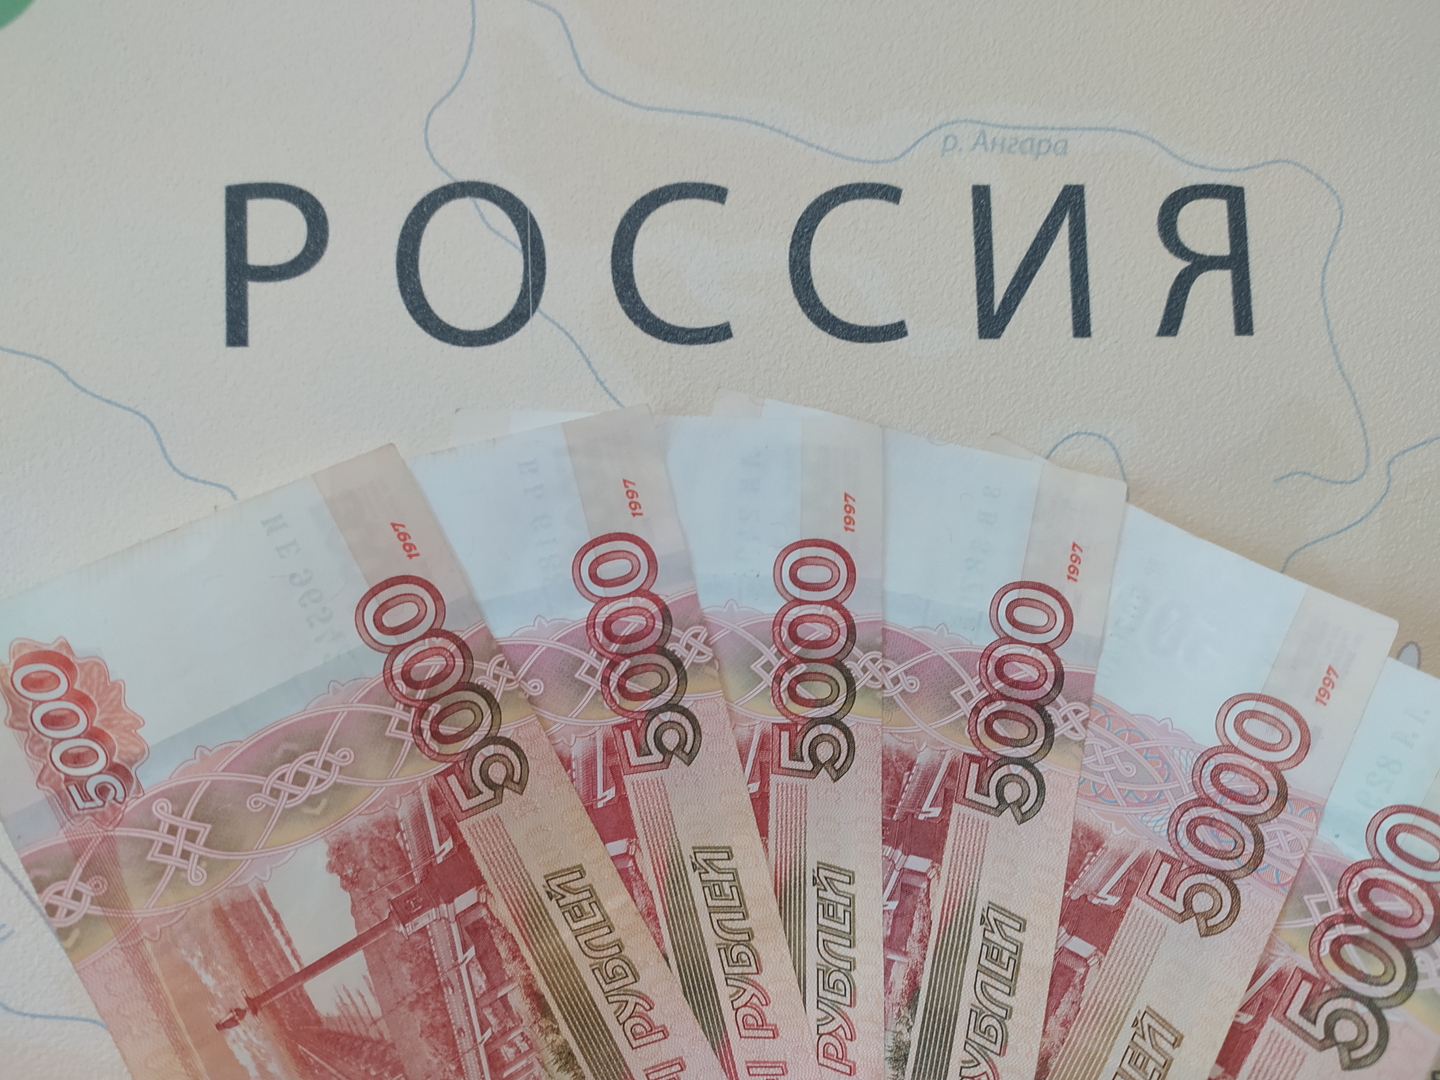 الكرملين: روسيا ليست مفلسة وقادرة على سداد ديونها وتجميد الغرب لأموالها 